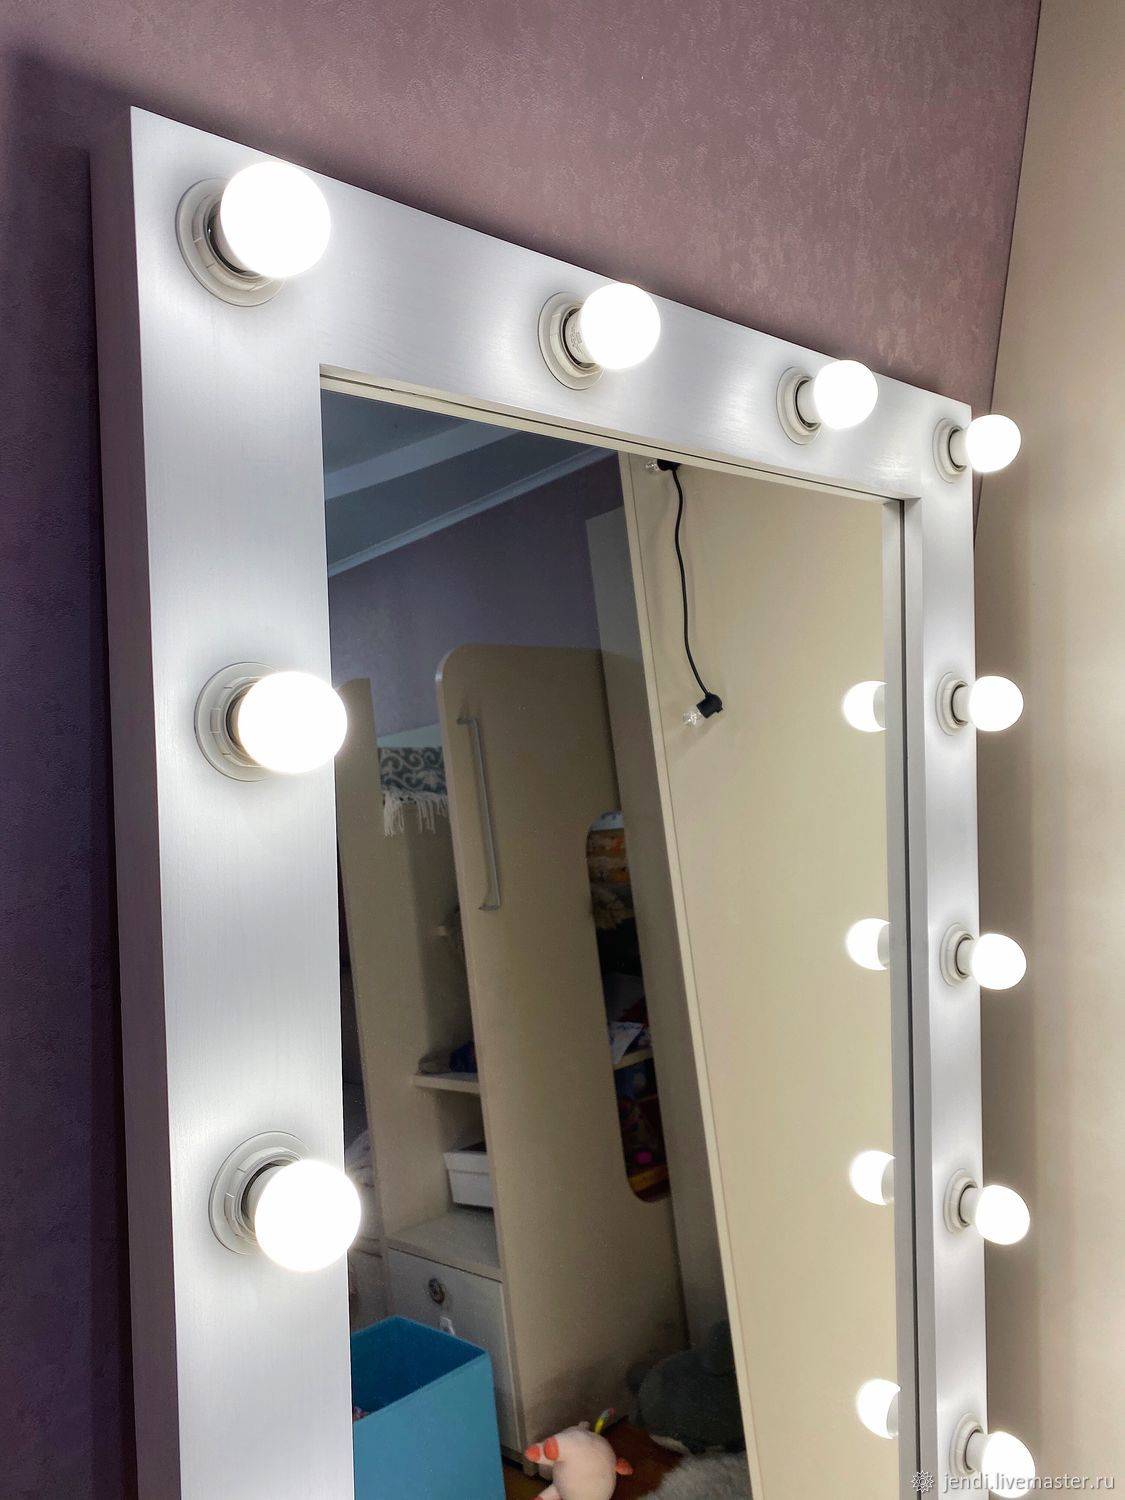 Гримерное зеркало своими руками - 20 секретов. пошаговая инструкция изготовления зеркала для макияжа.